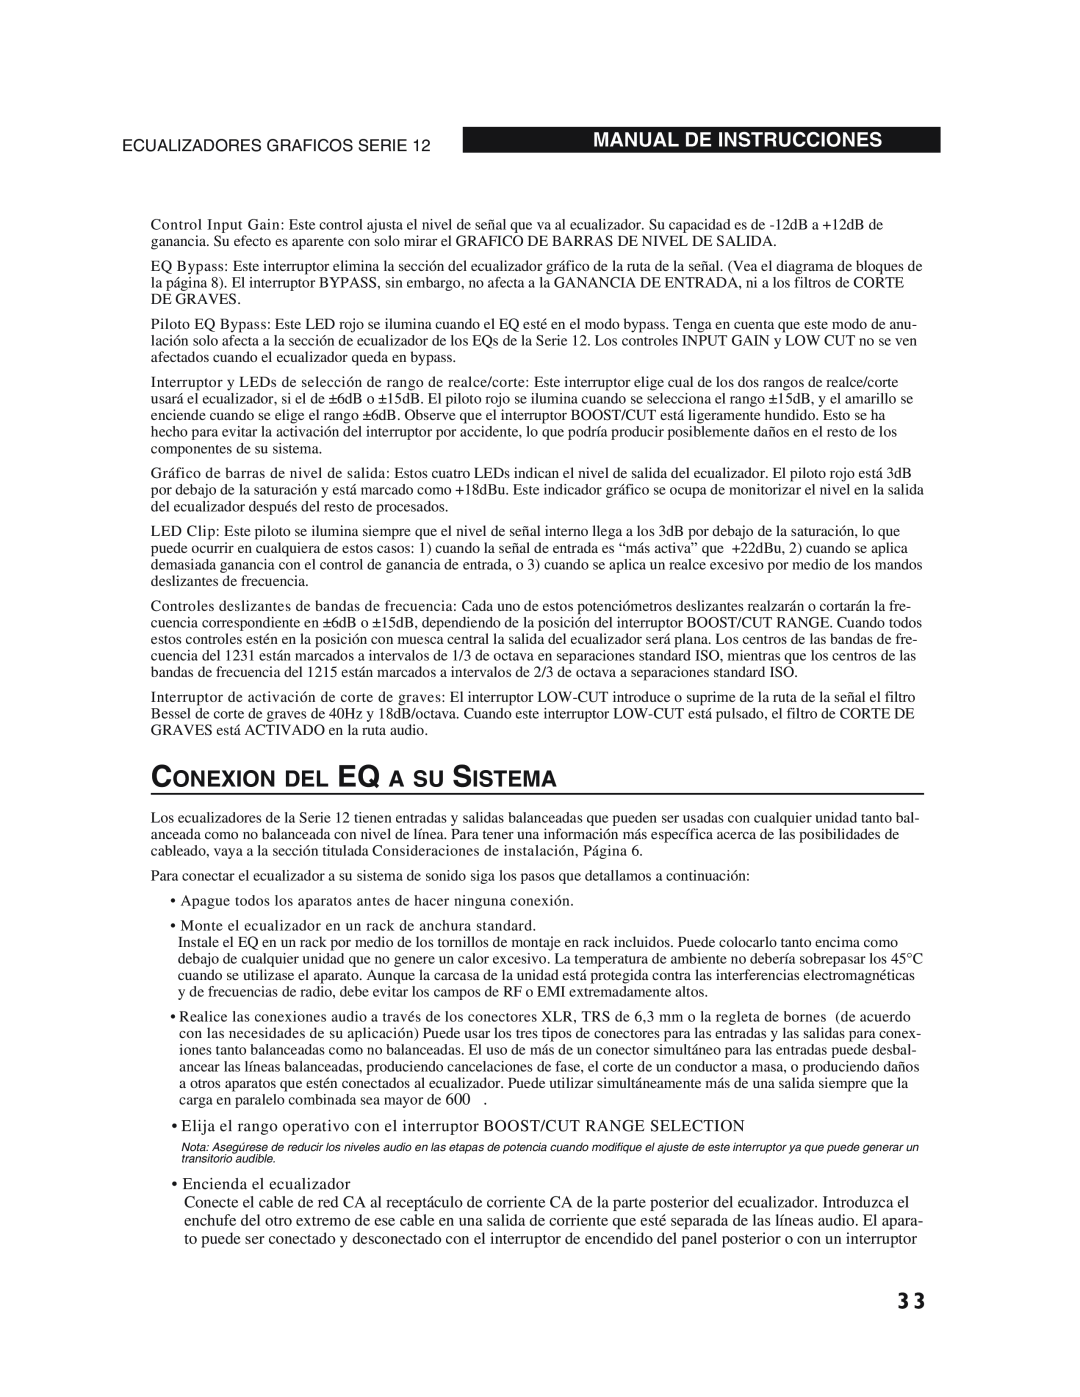 dbx Pro 12 Series operation manual Conexion Del Eq A Su Sistema, Manual De Instrucciones, Ecualizadores Graficos Serie 